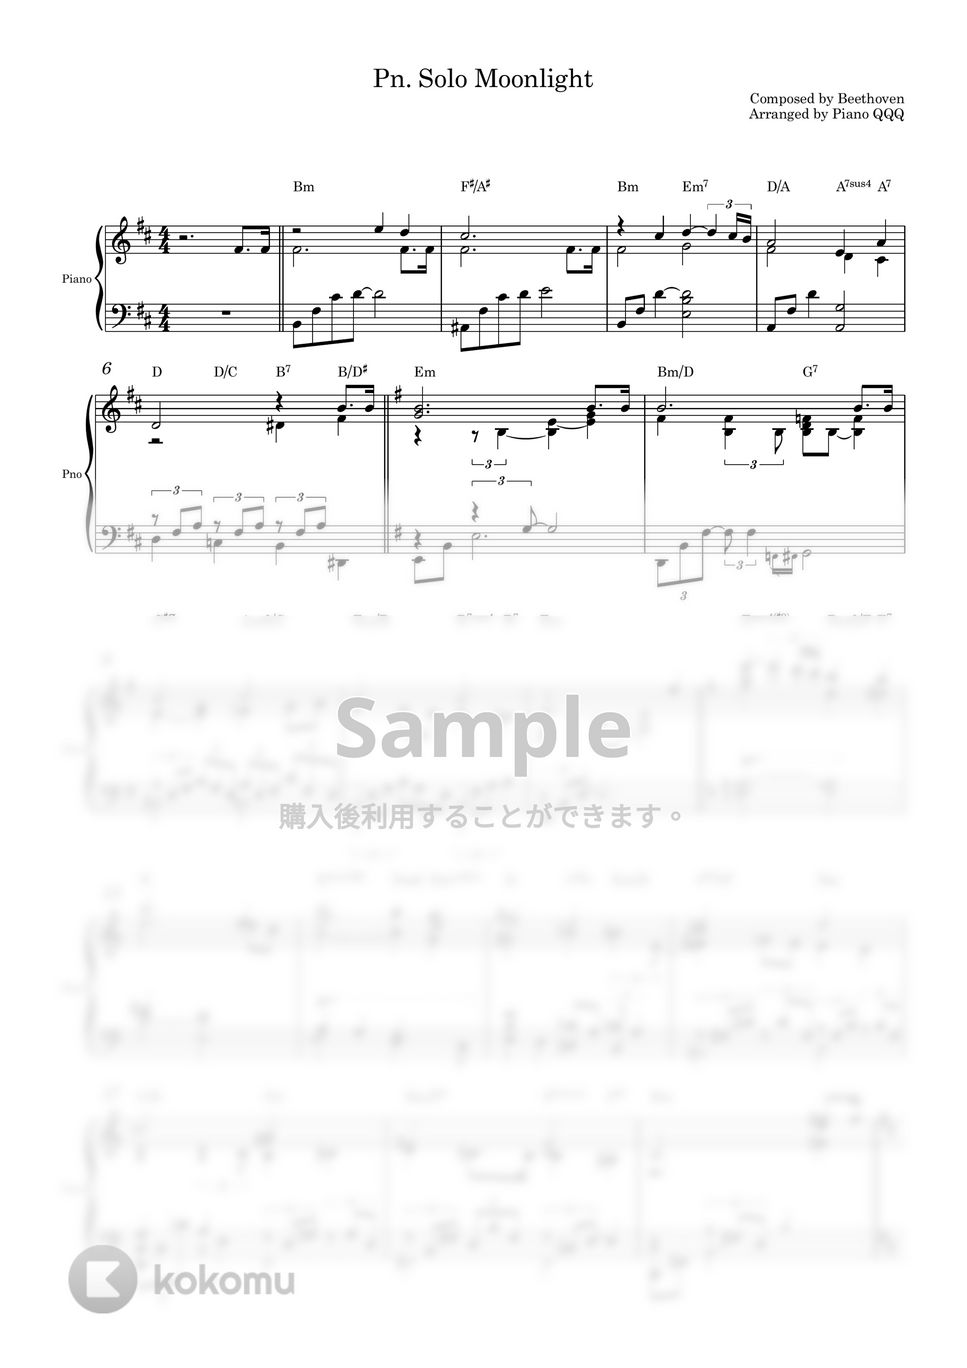 ベートーベン - 月光ソナタ (ピアノソロ) by Piano QQQ